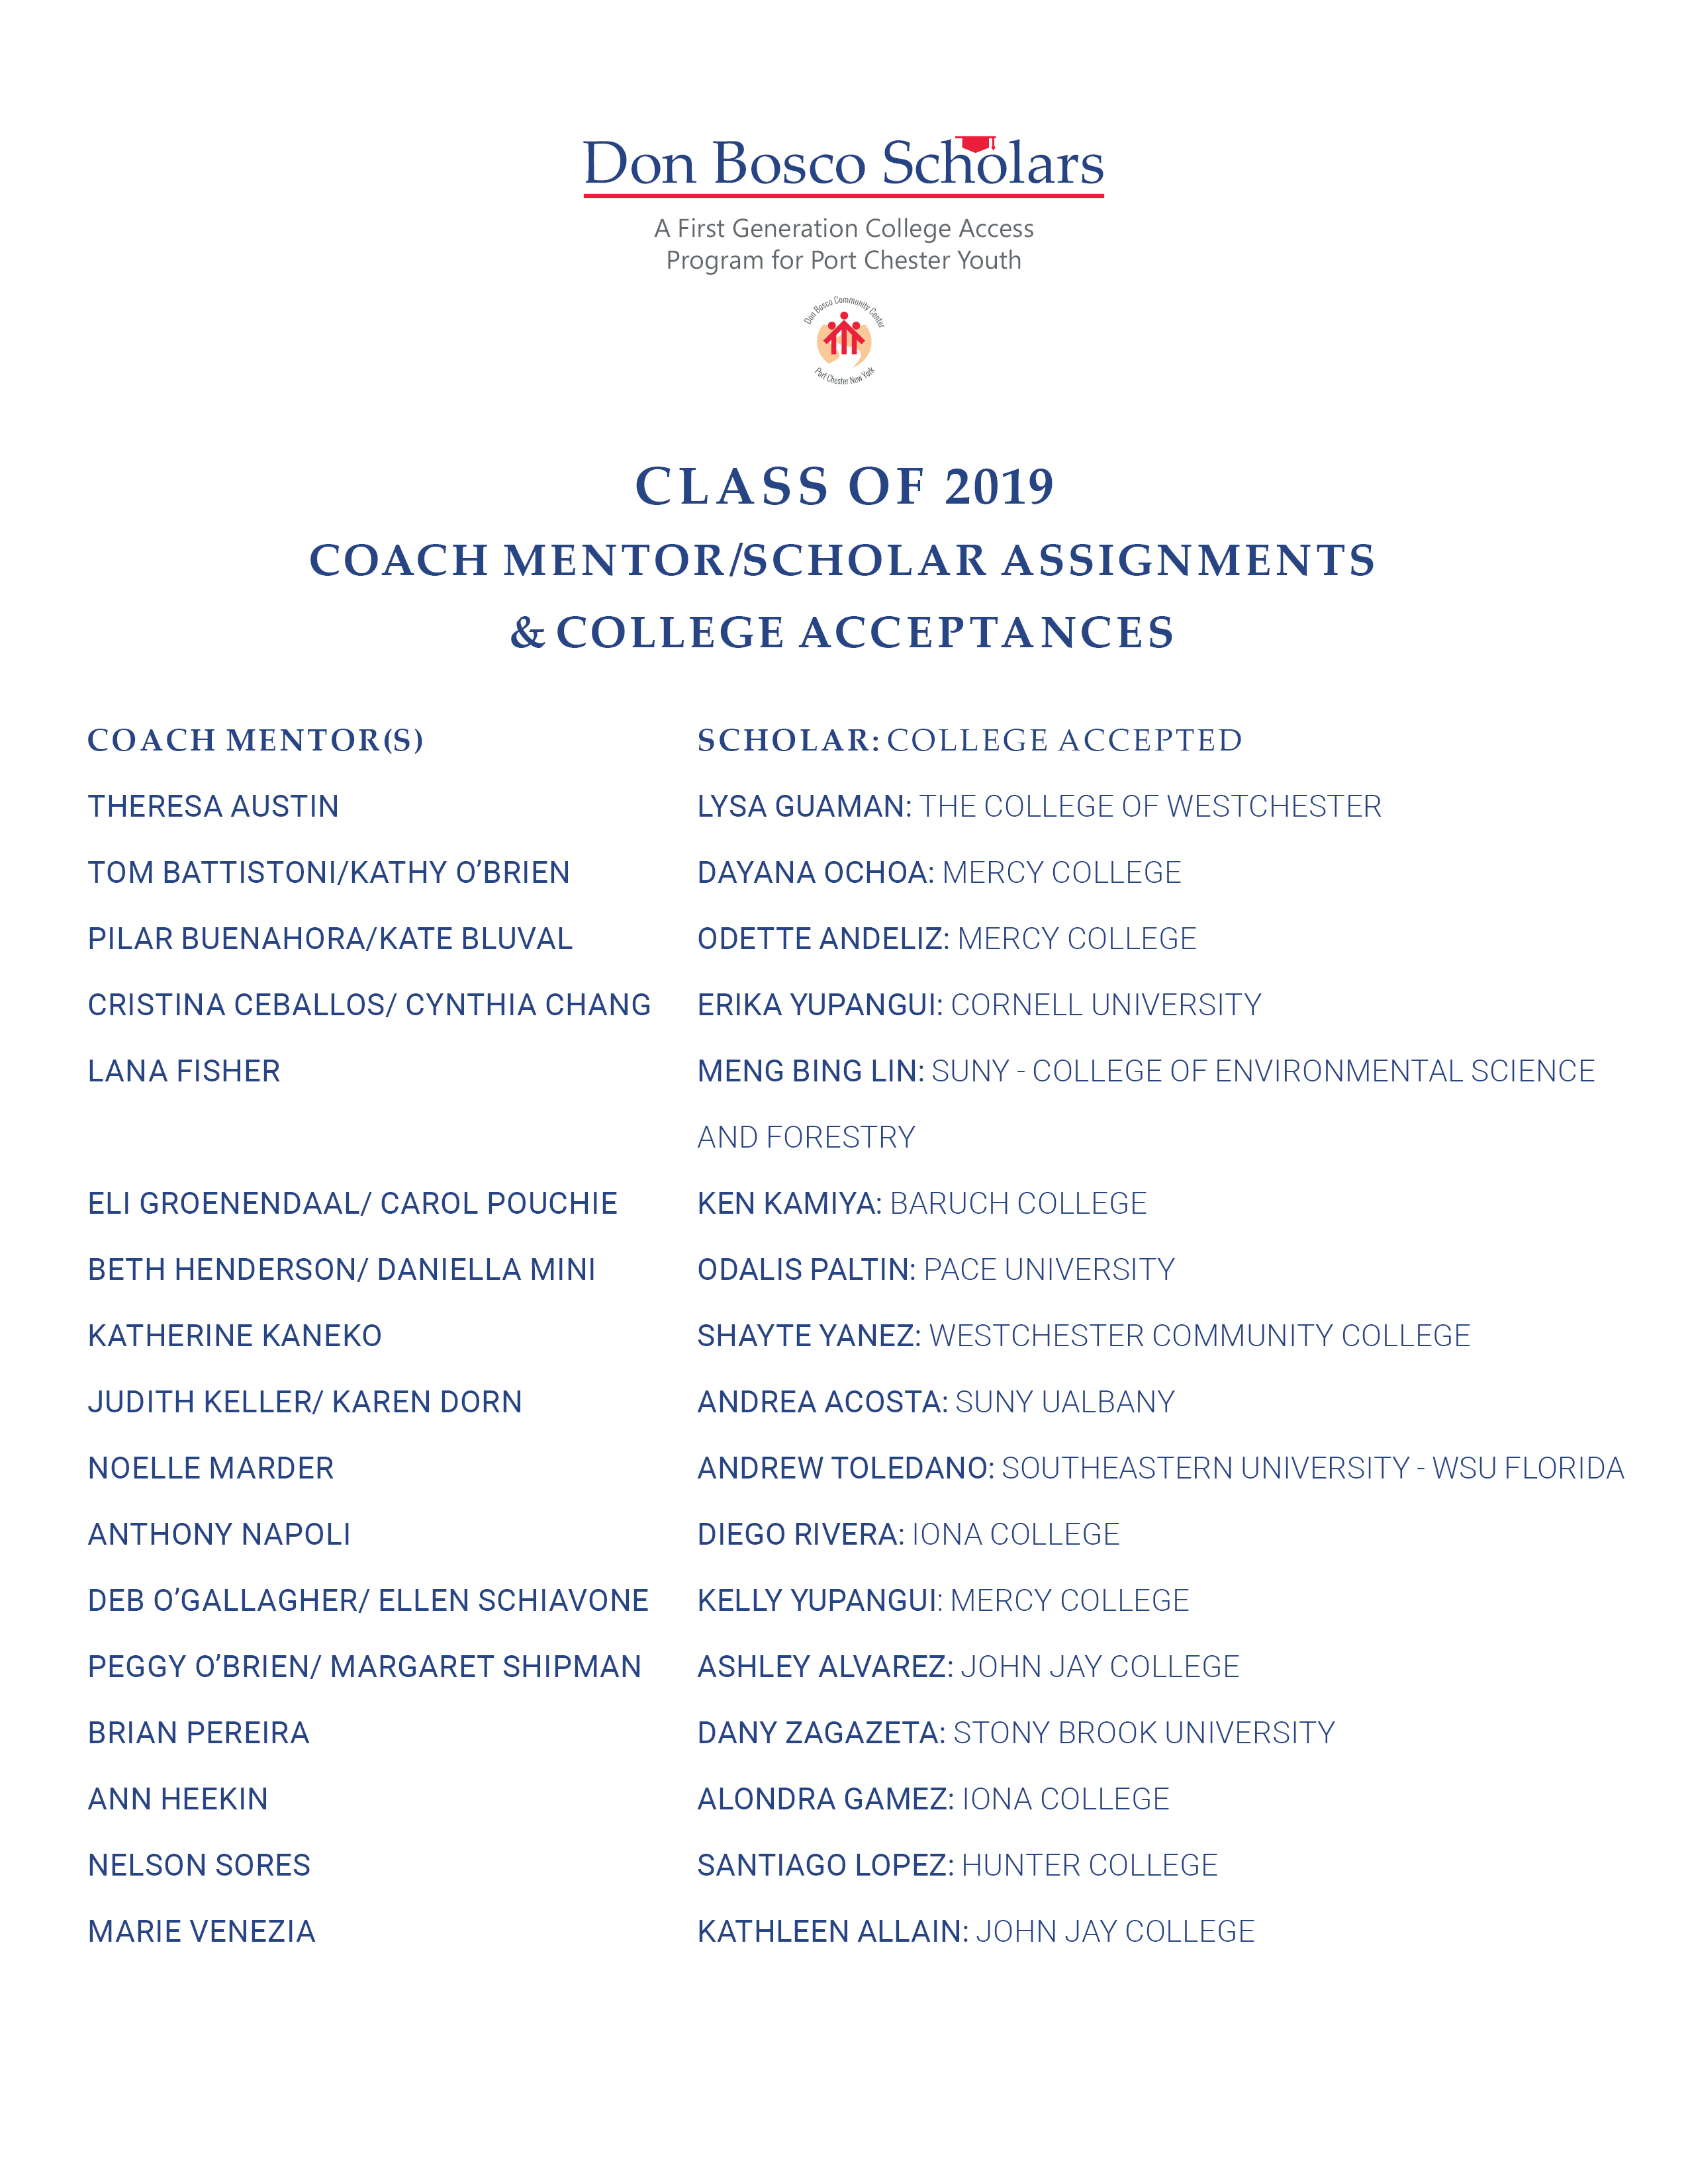 Don Bosco Scholars Class of 2019 Coach/Scholar College Acceptances List